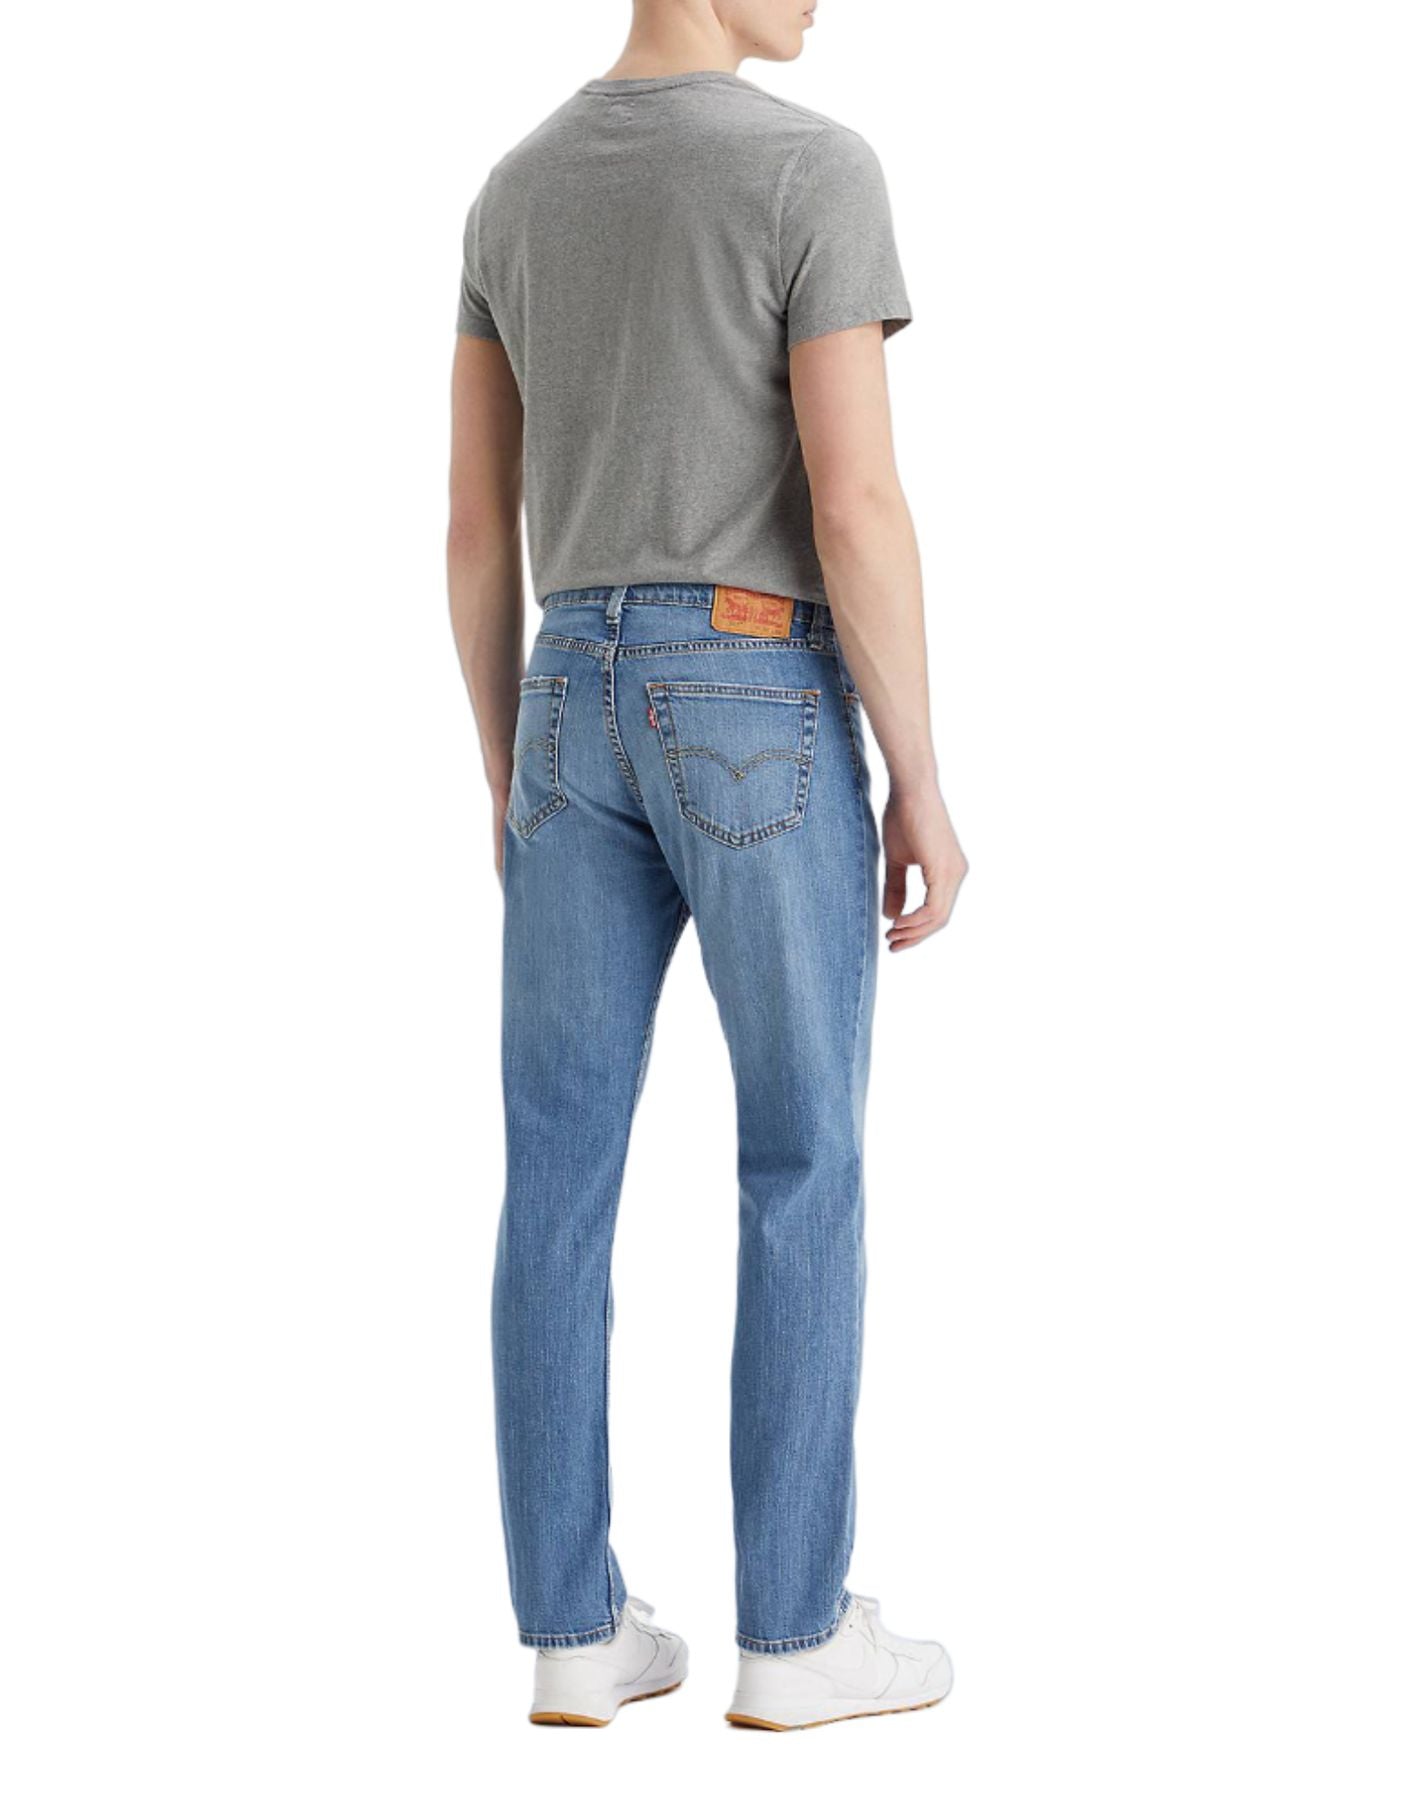 Pantalon Jean homme, 5 poches, Rivets, Renfort fessier